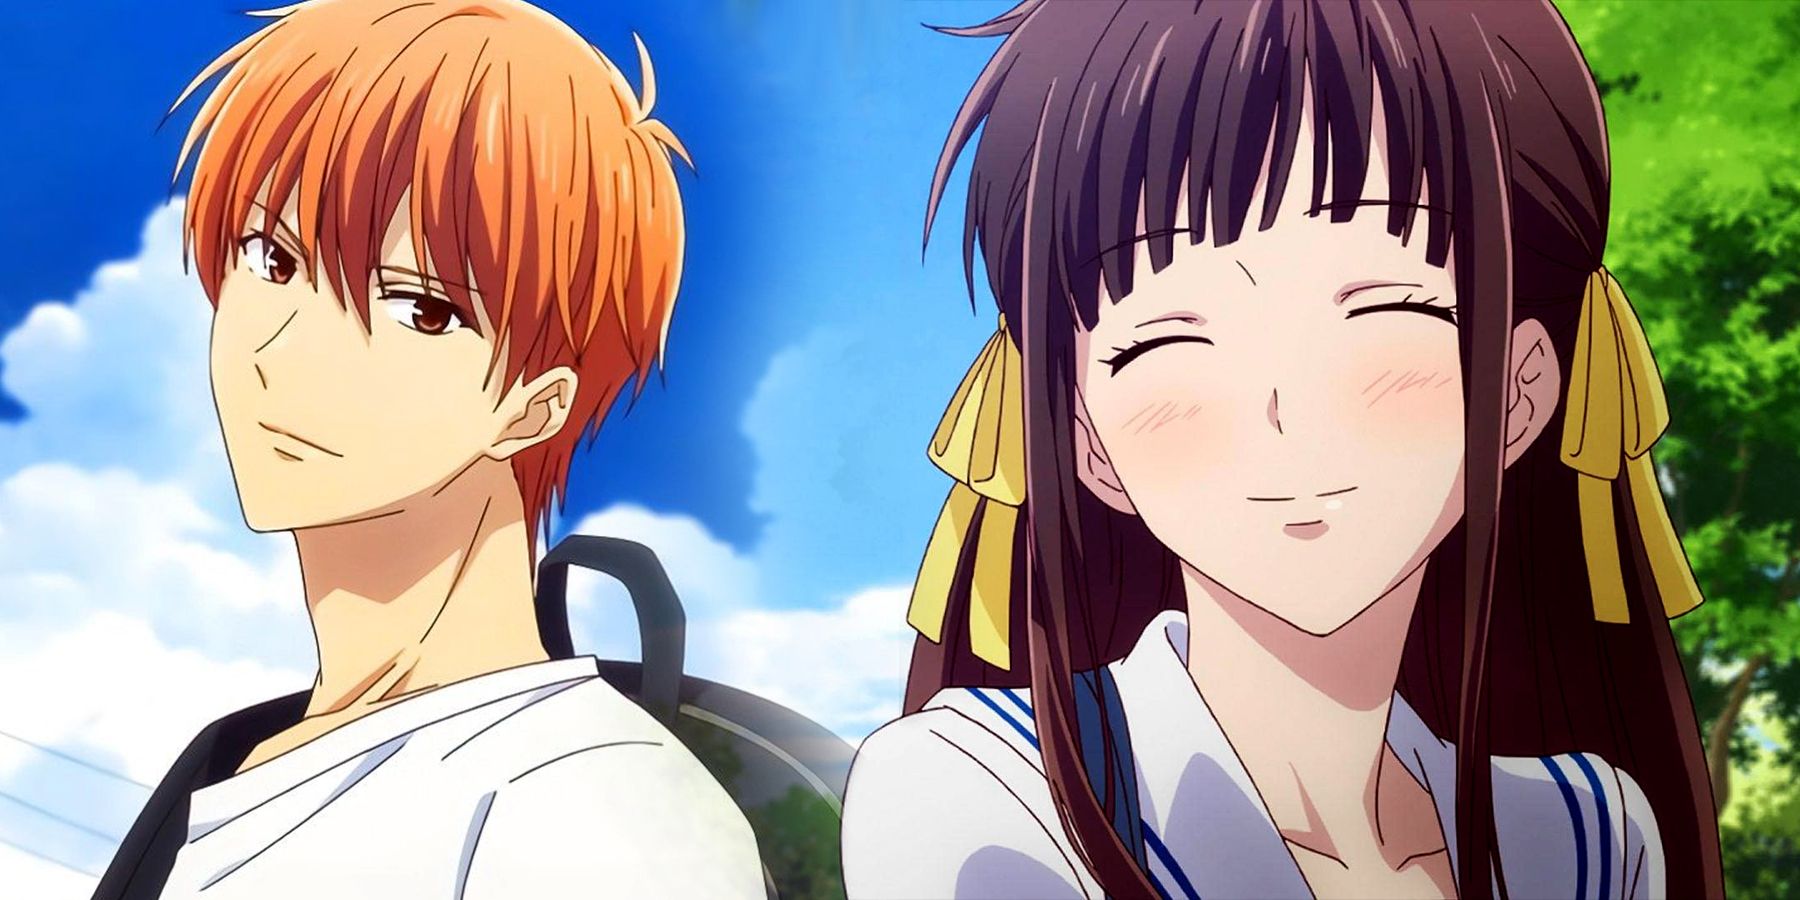 Kyo e Tohru sorrindo no anime de reinicialização do Fruits Basket.